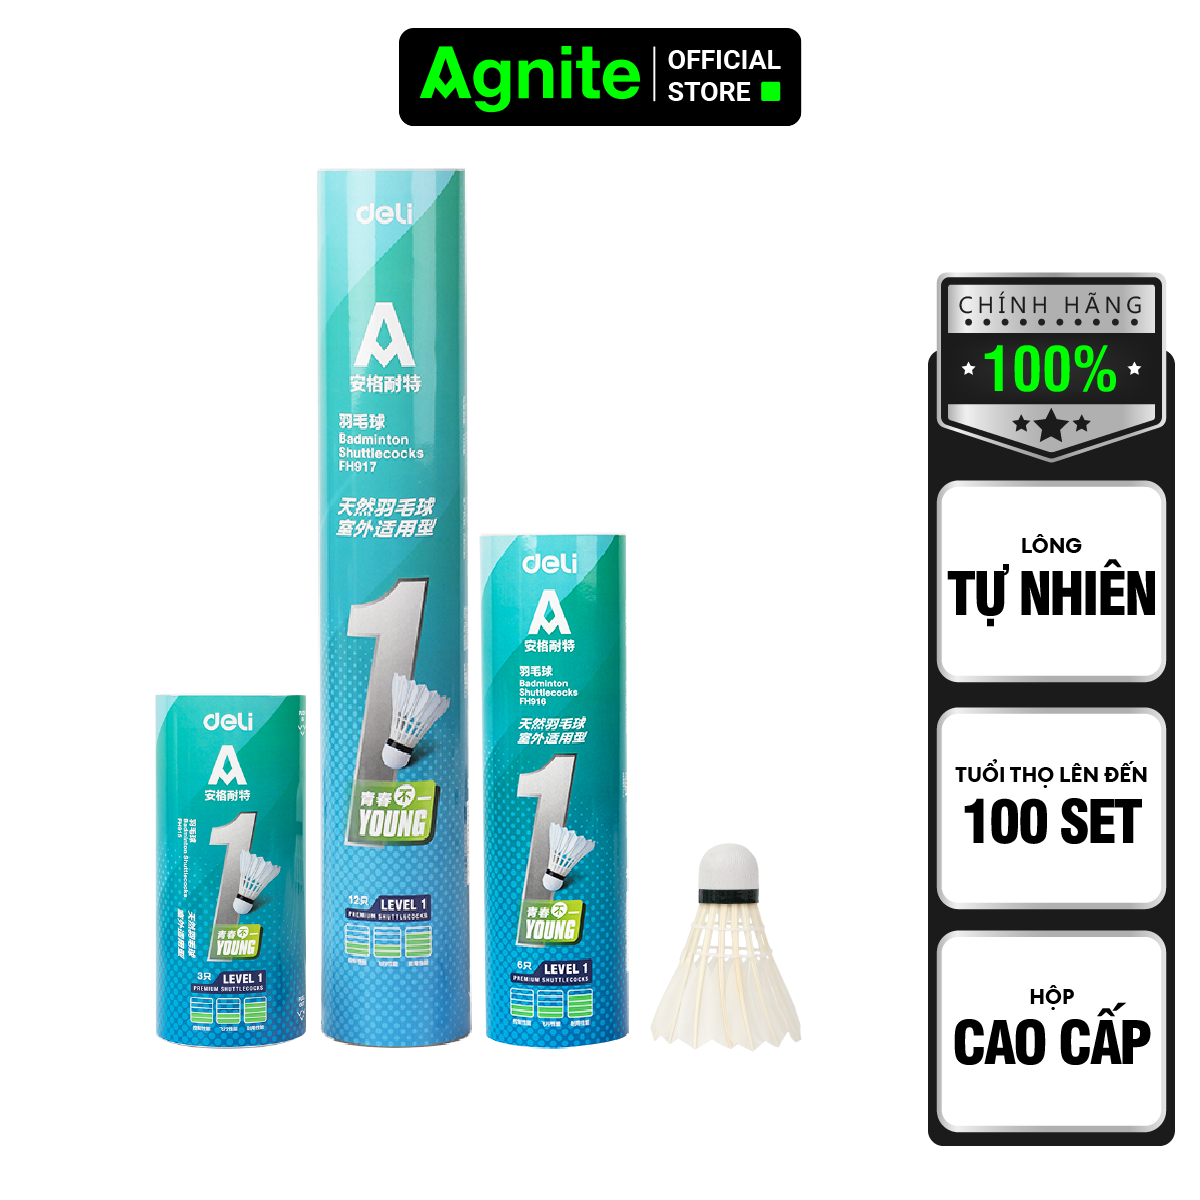 Hình ảnh Hộp cầu lông cao cấp chính hãng Agnite, ống cầu lông vũ phục vụ luyện tập, thi đấu chuyên nghiệp - FH915